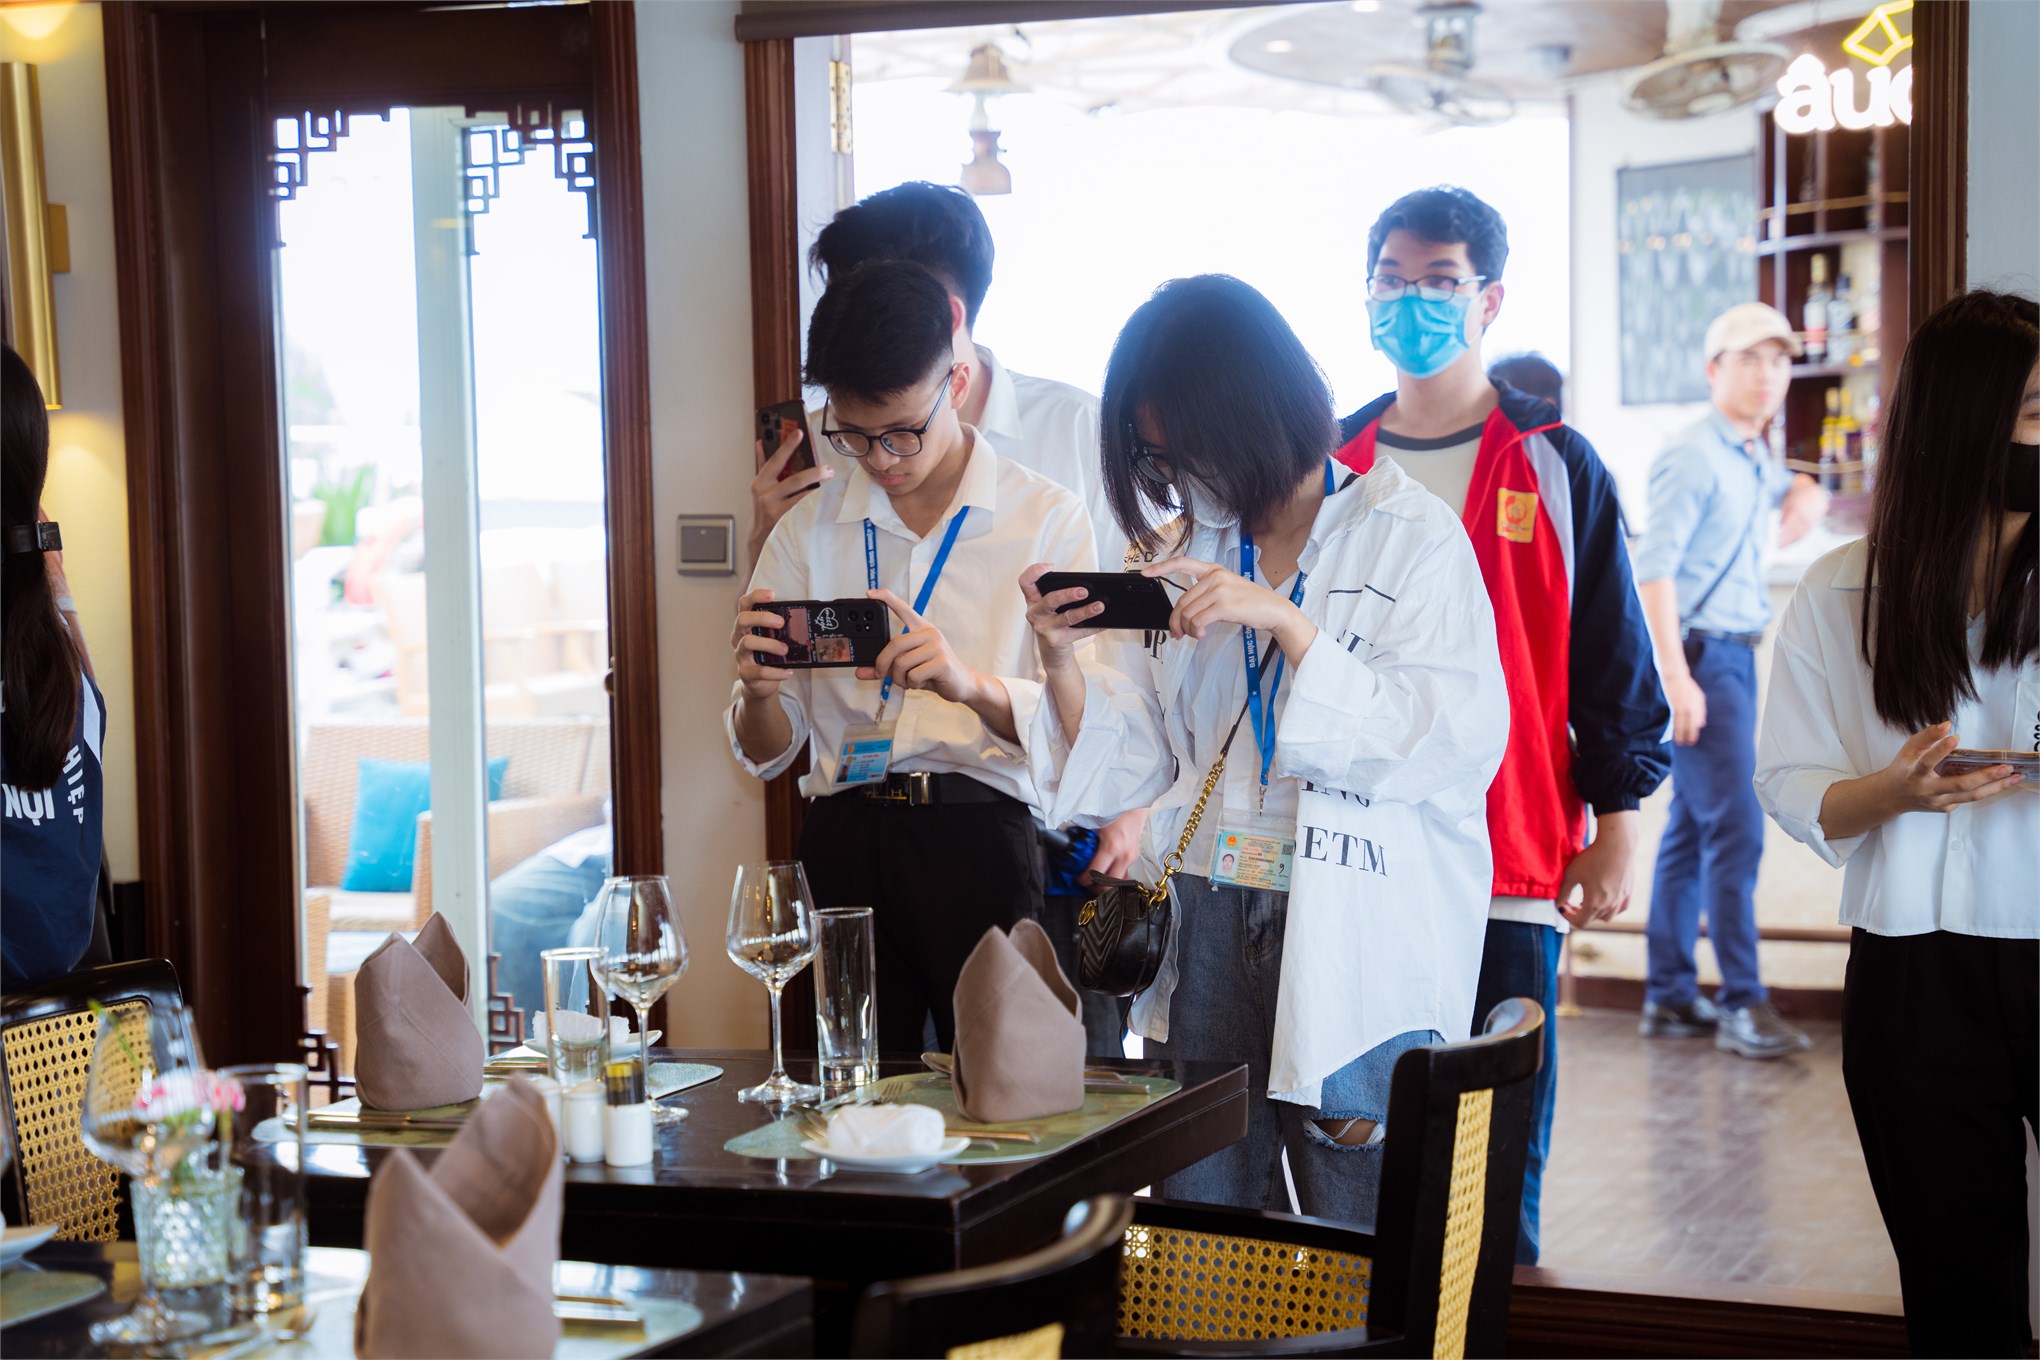 Sinh viên ngành Quản trị khách sạn, ngành Quản trị nhà hàng và dịch vụ ăn uống, Đại học Công nghiệp Hà Nội với hoạt động trải nghiệm thực tế